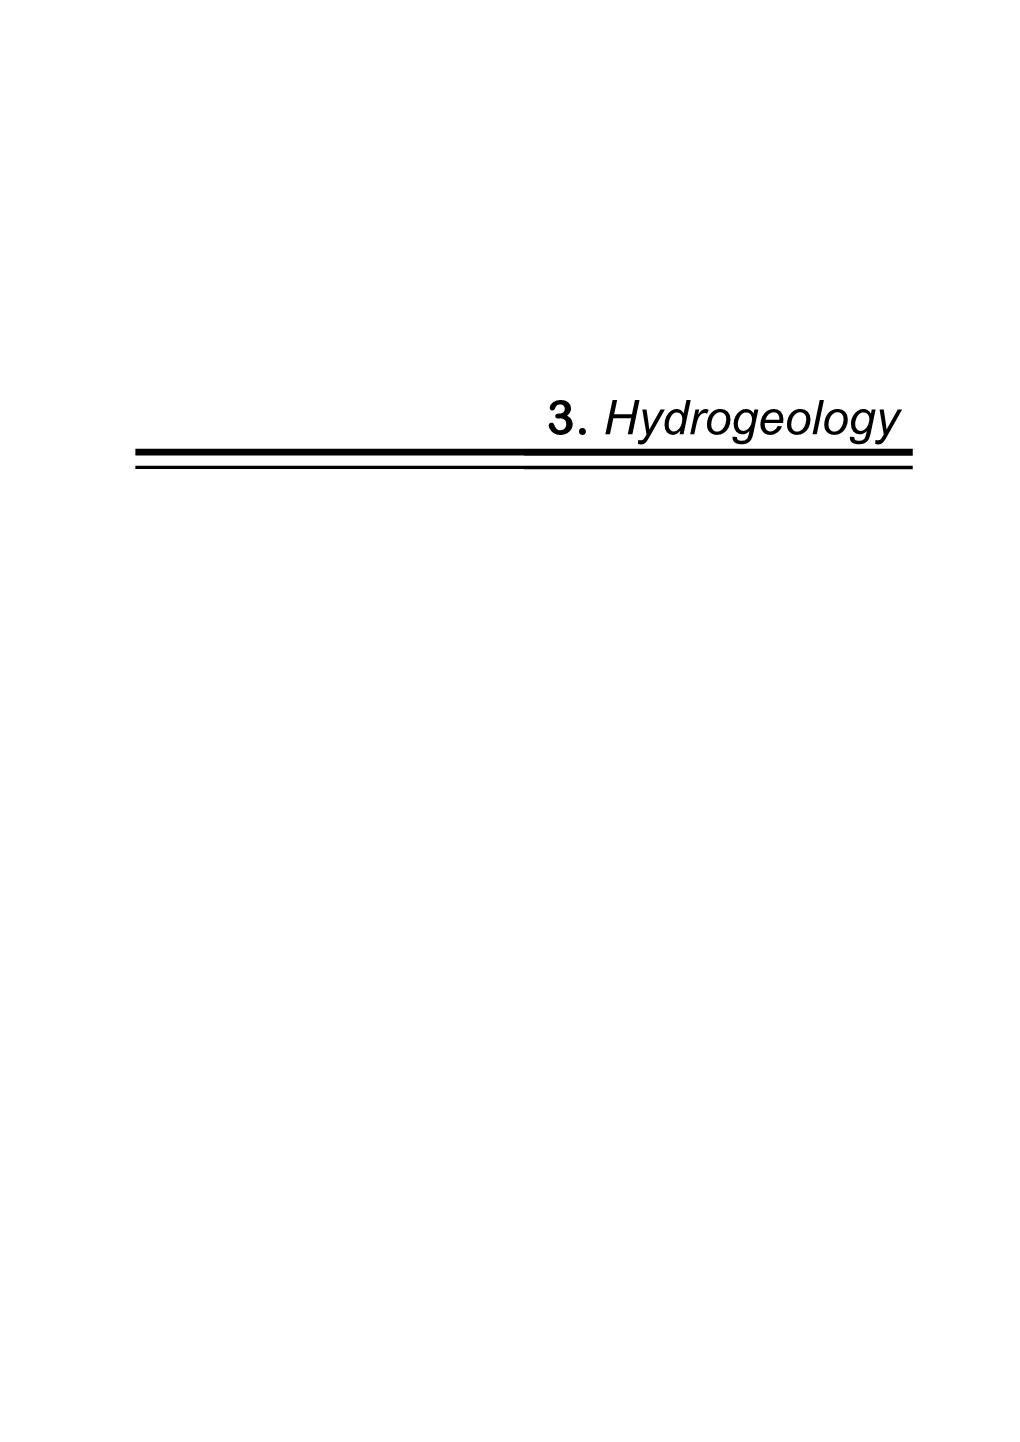 3. Hydrogeology